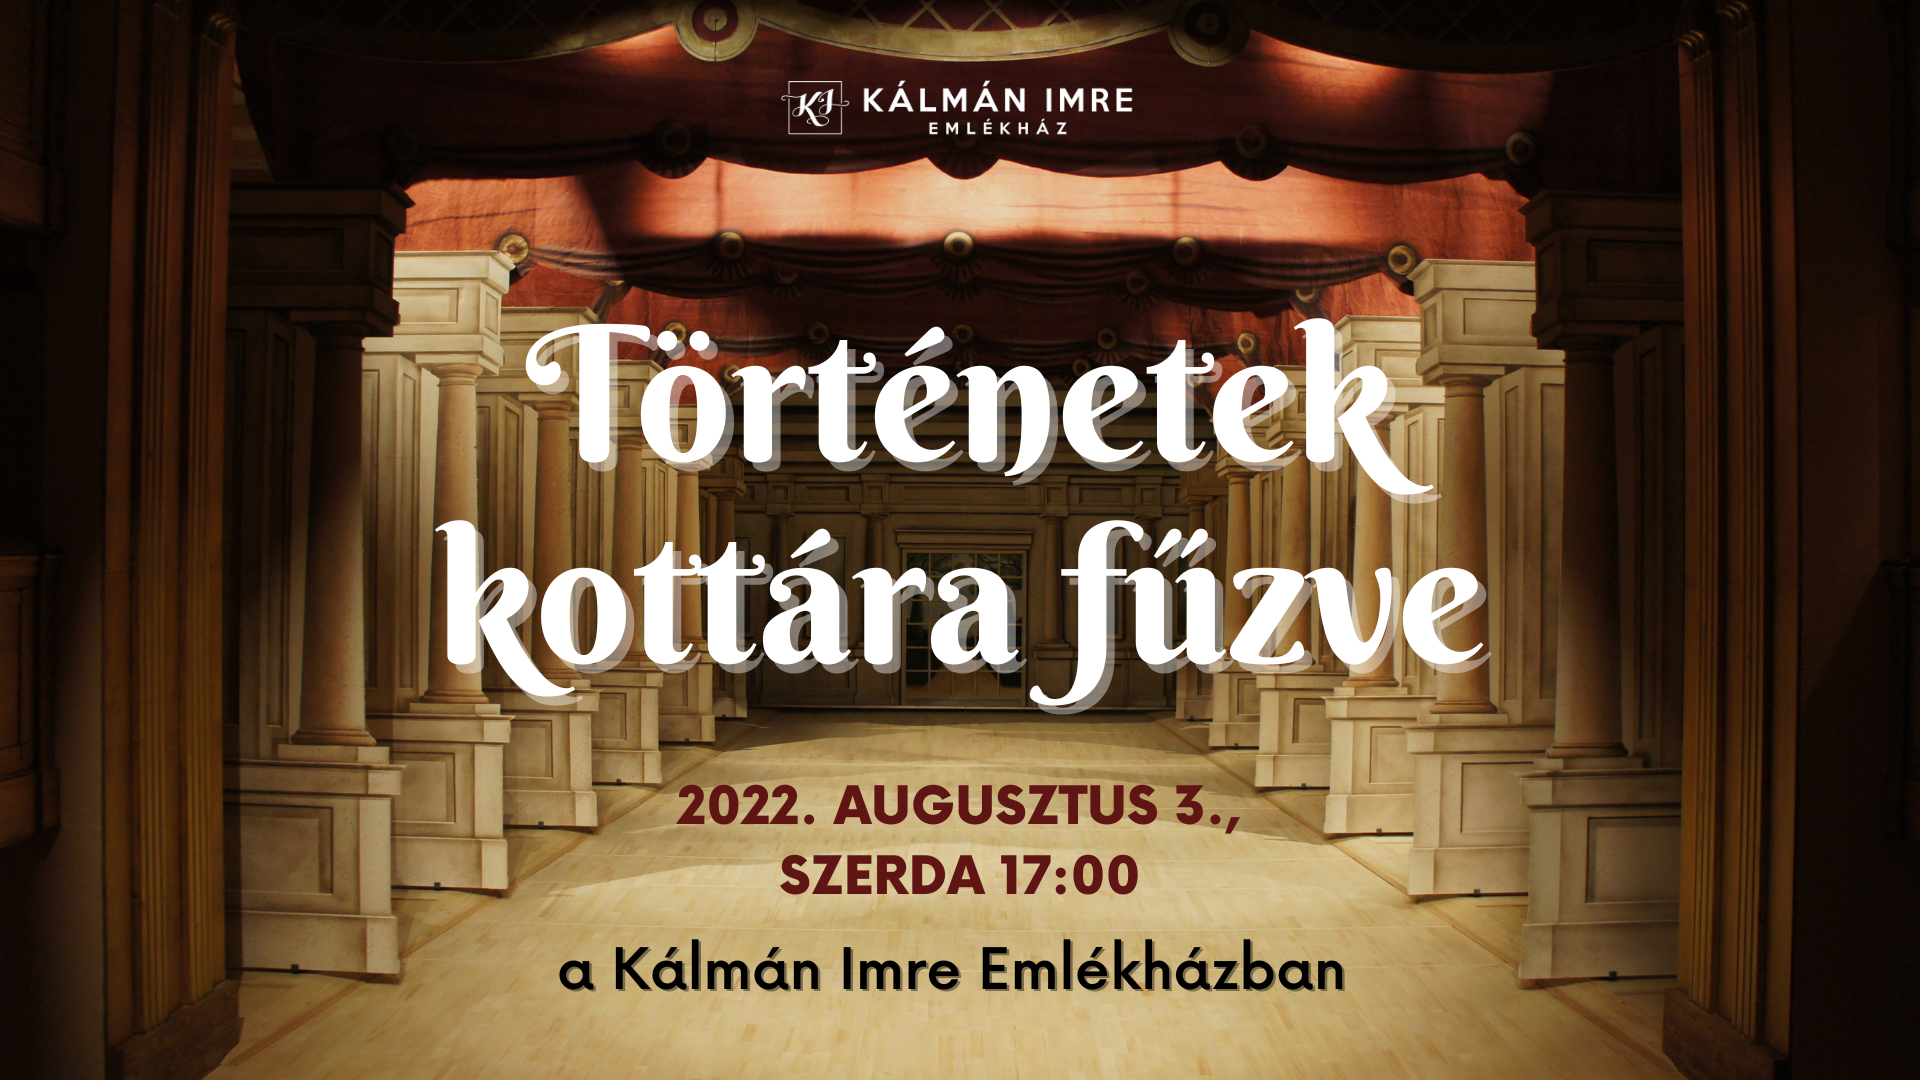 TÖRTÉNETEK KOTTÁRA FŰZVE: zenés előadás és anekdoták az Operettkirályról – 2022. augusztus 3.